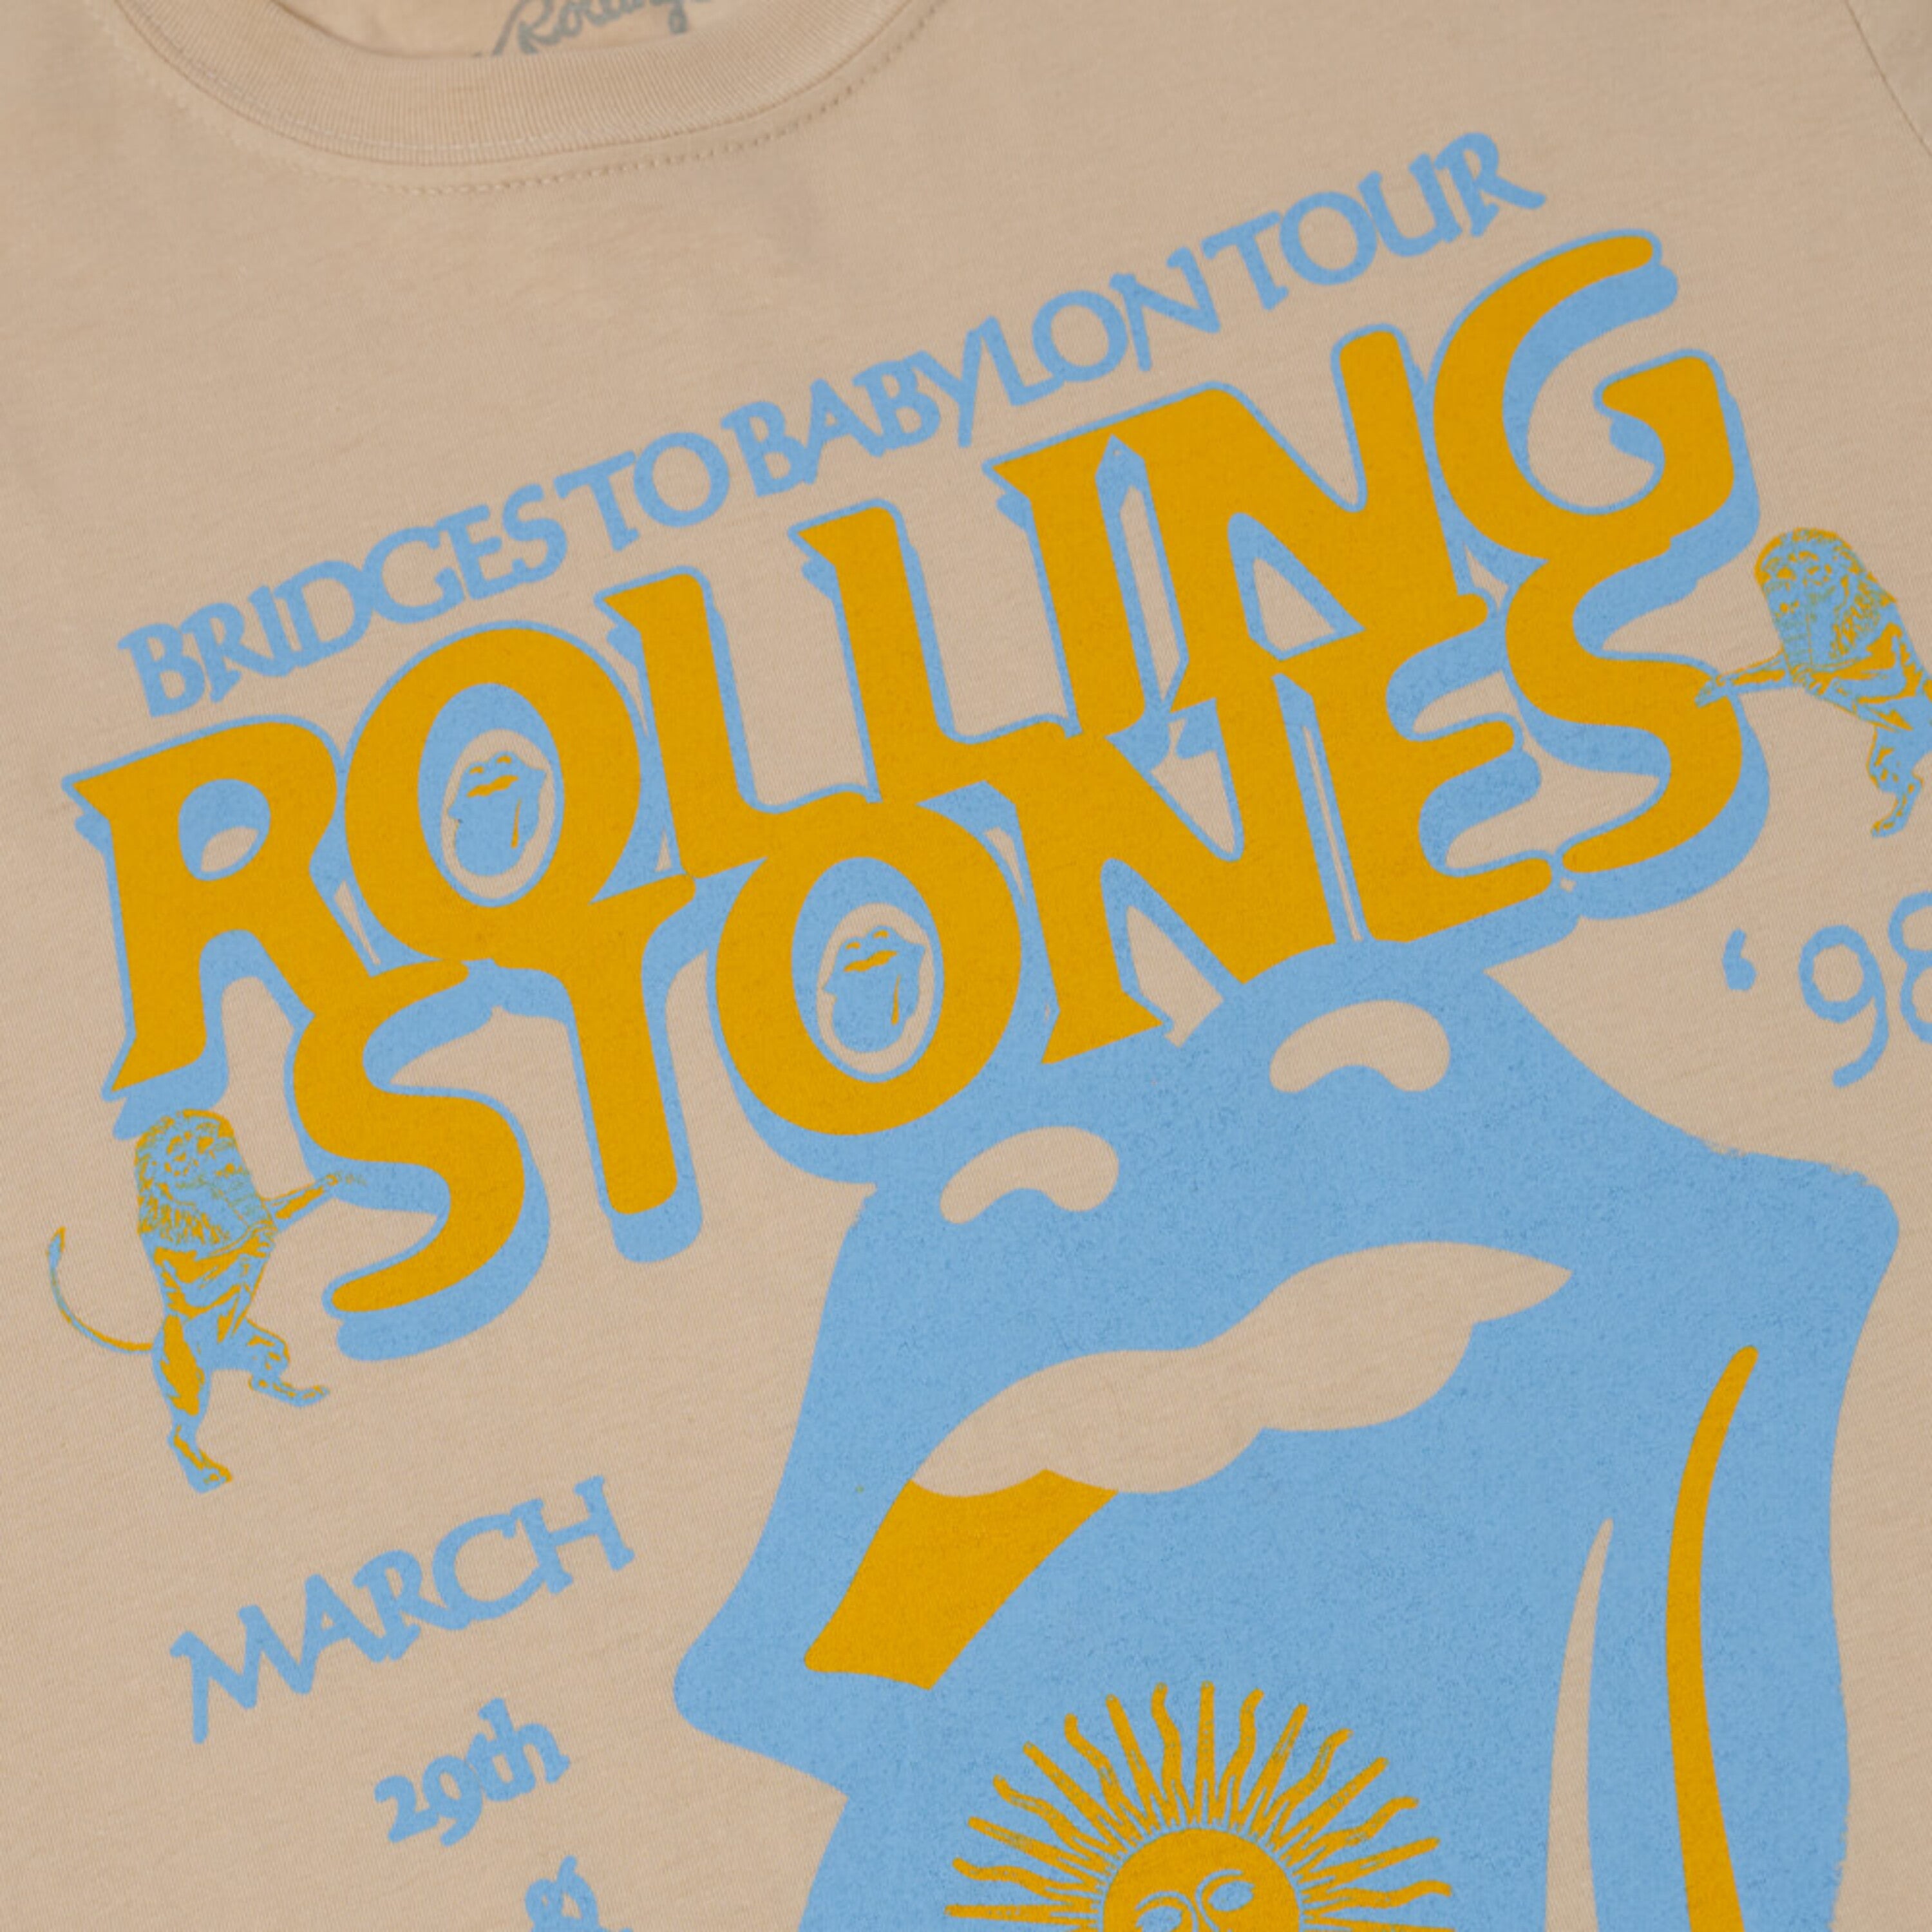 The Rolling Stones - Bridges To Babylon '98 Tour T-Shirt 